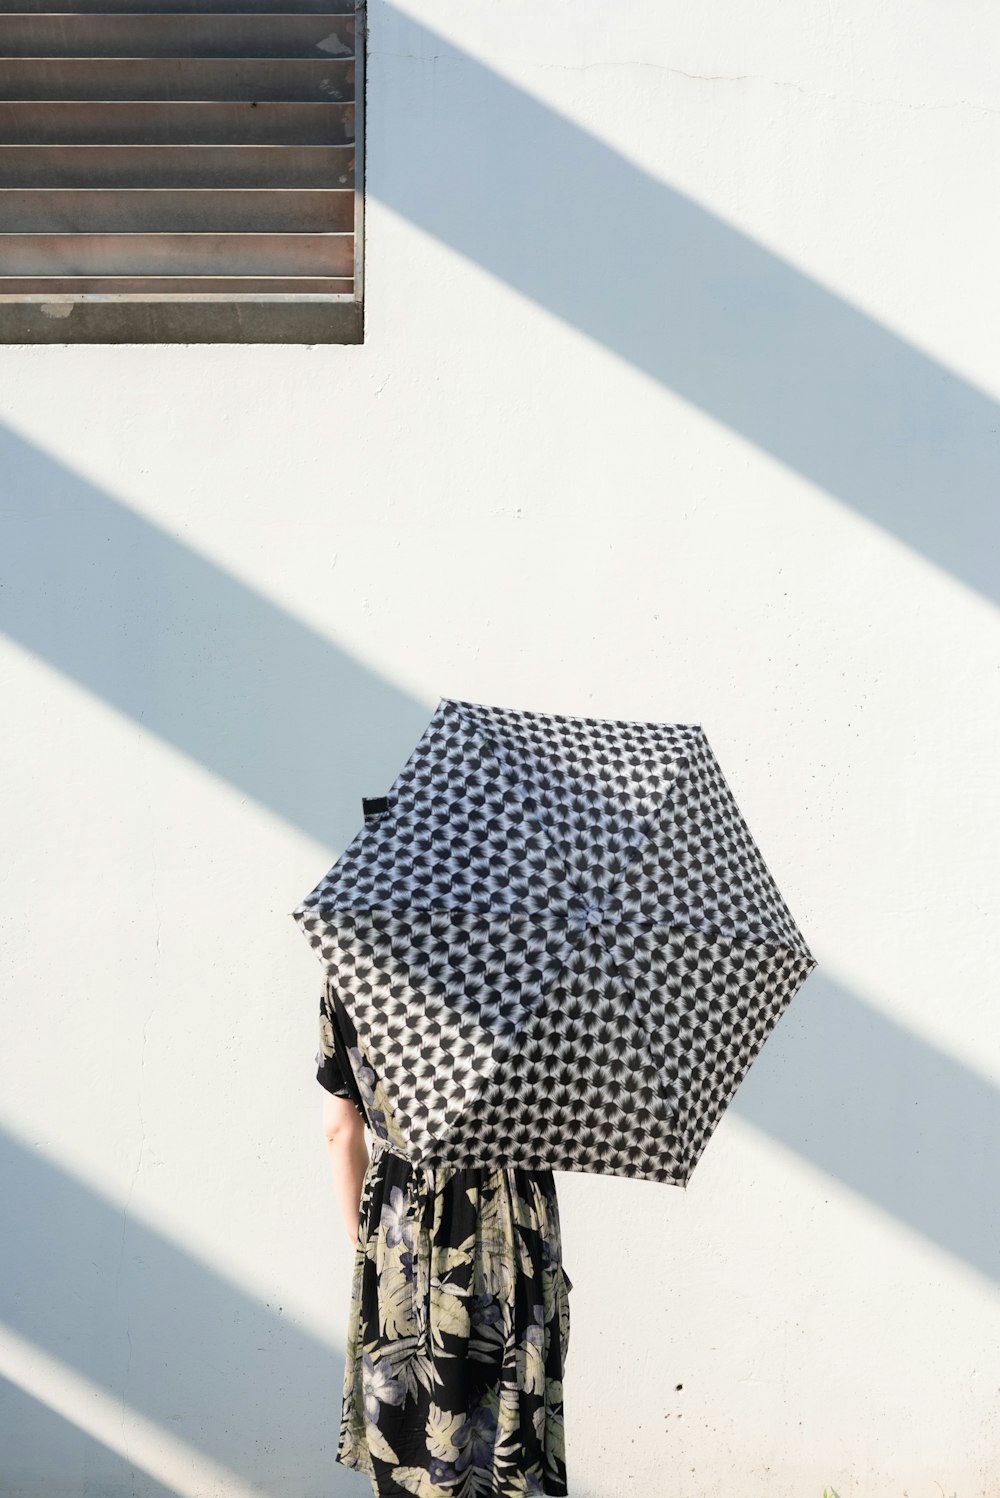 pessoa segurando a fotografia de close-up do guarda-chuva preto e branco